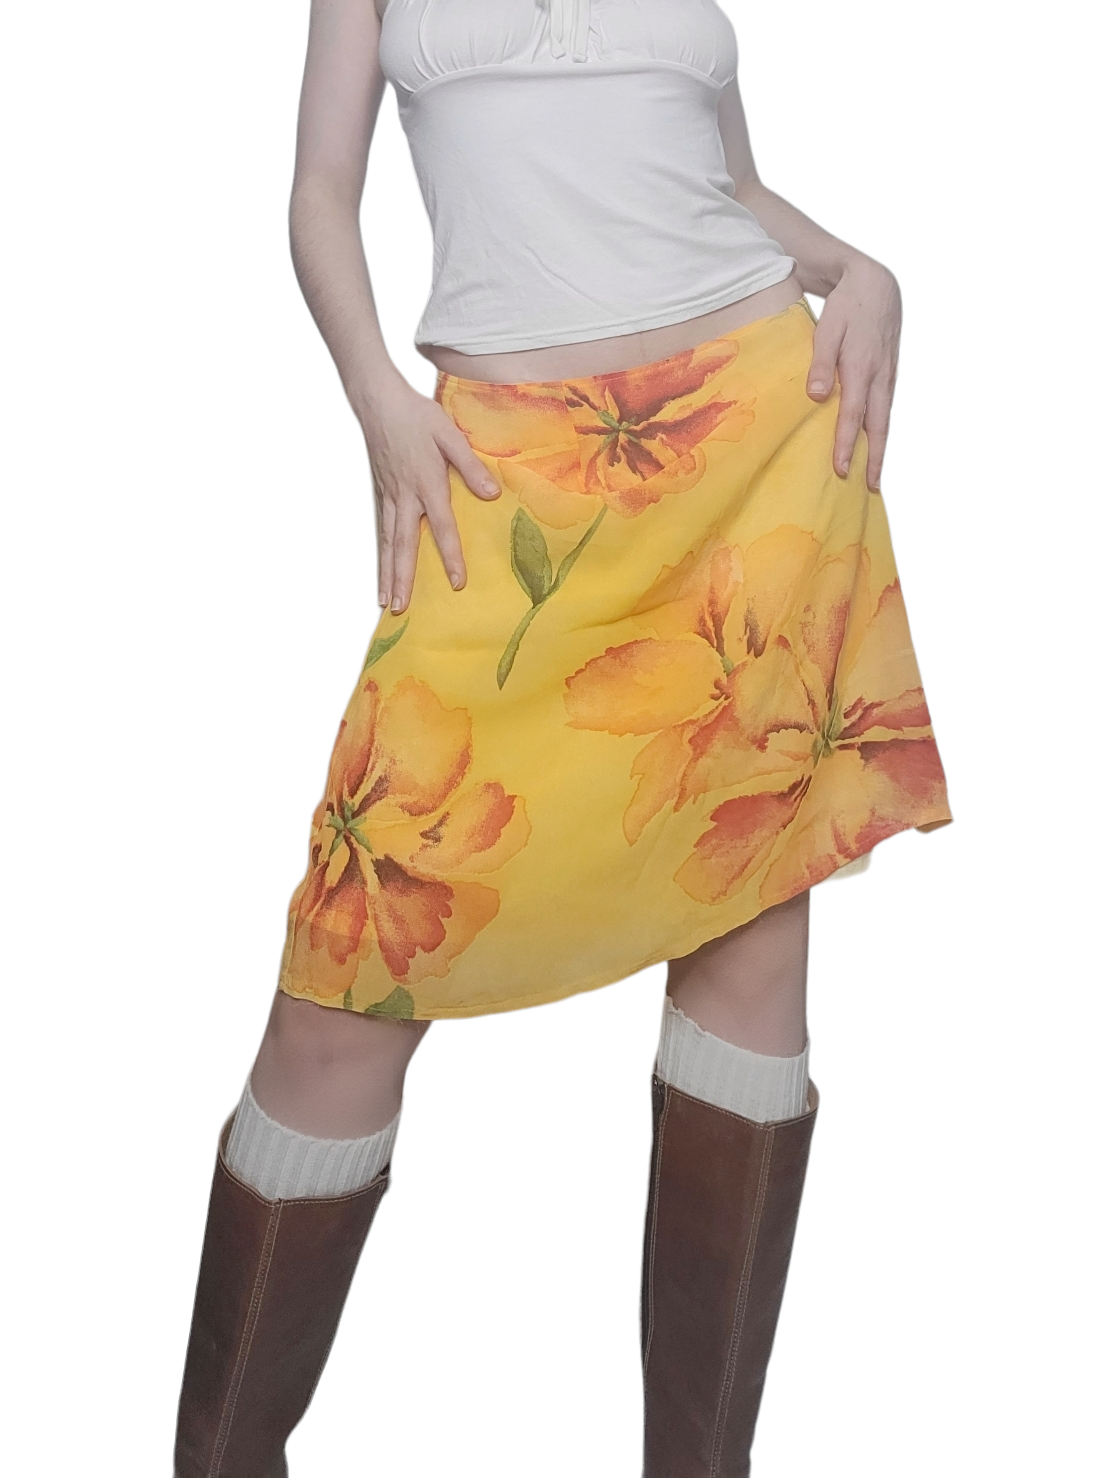 Flowers mesh vintage y2k printed skirt funky aesthetic fairy colorfull fancy cute 